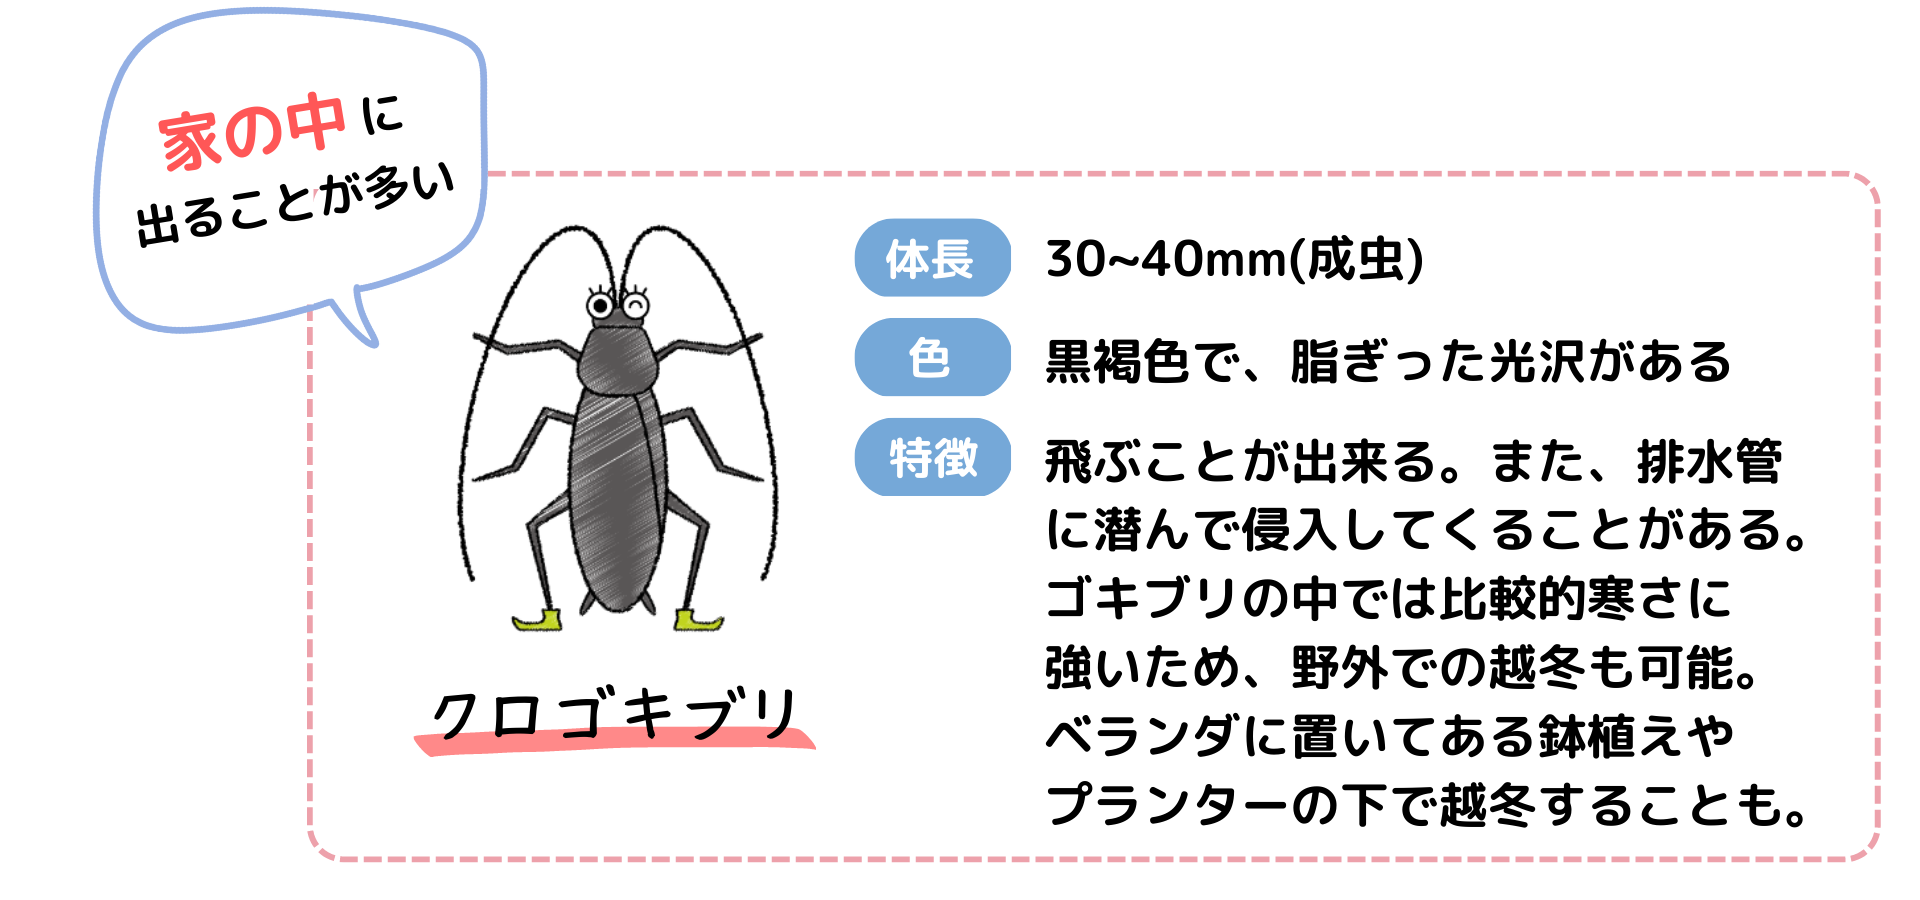 クロゴキブリの特徴